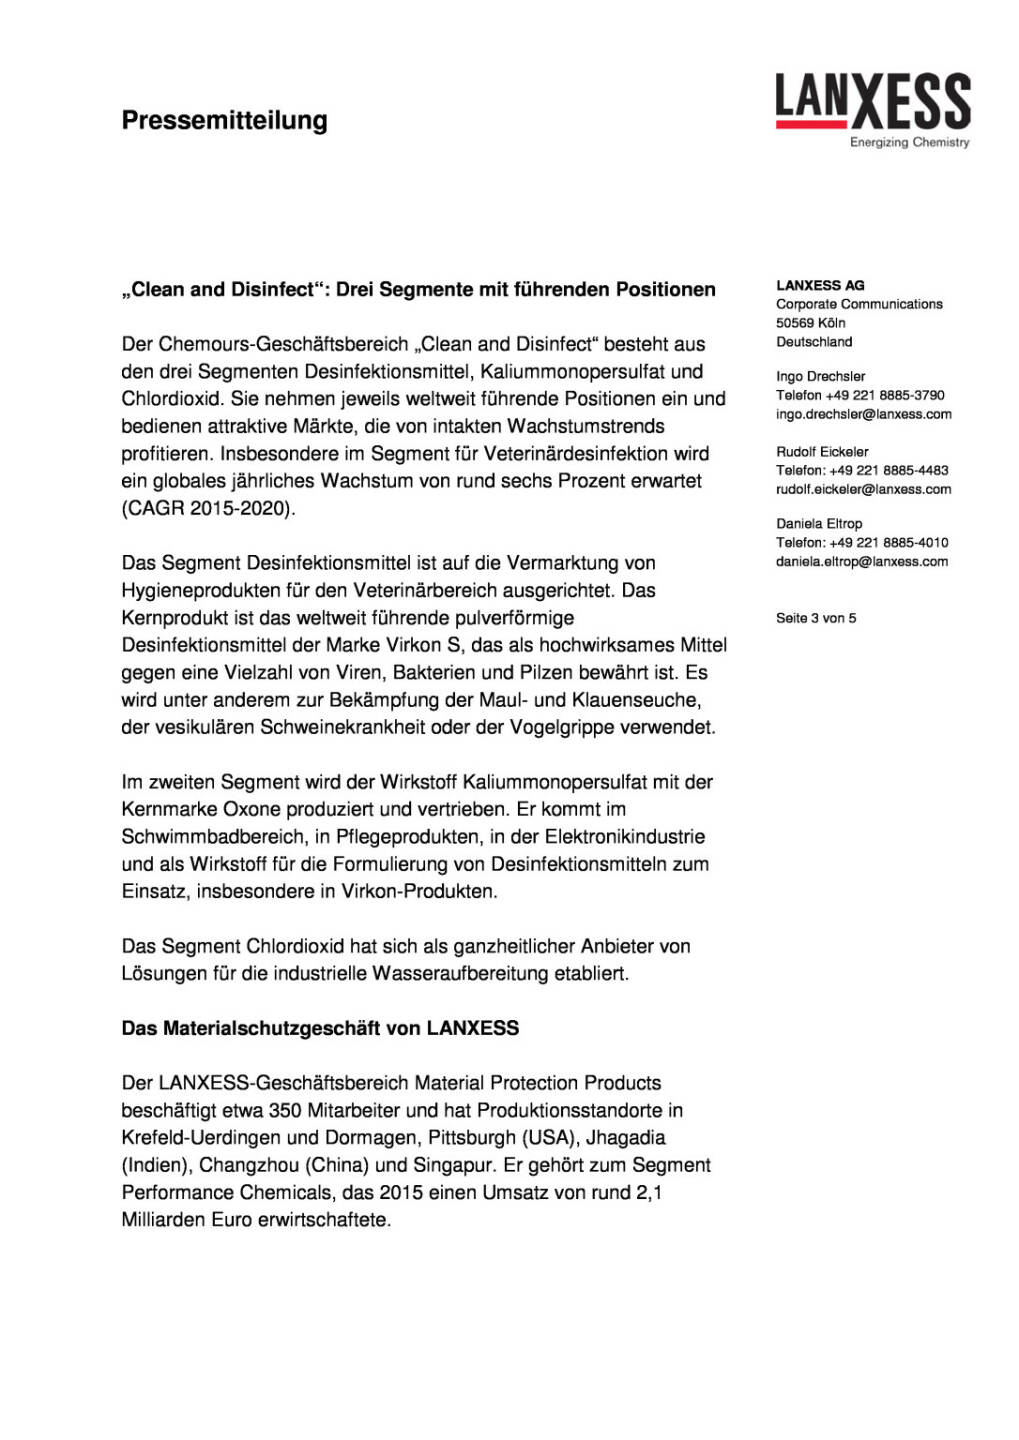 Lanxess übernimmt Spezialitätengeschäft für Desinfektions- und Hygienelösungen von Chemours, Seite 3/5, komplettes Dokument unter http://boerse-social.com/static/uploads/file_941_lanxess_ubernimmt_spezialitatengeschaft_fur_desinfektions-_und_hygienelosungen_von_chemours.pdf